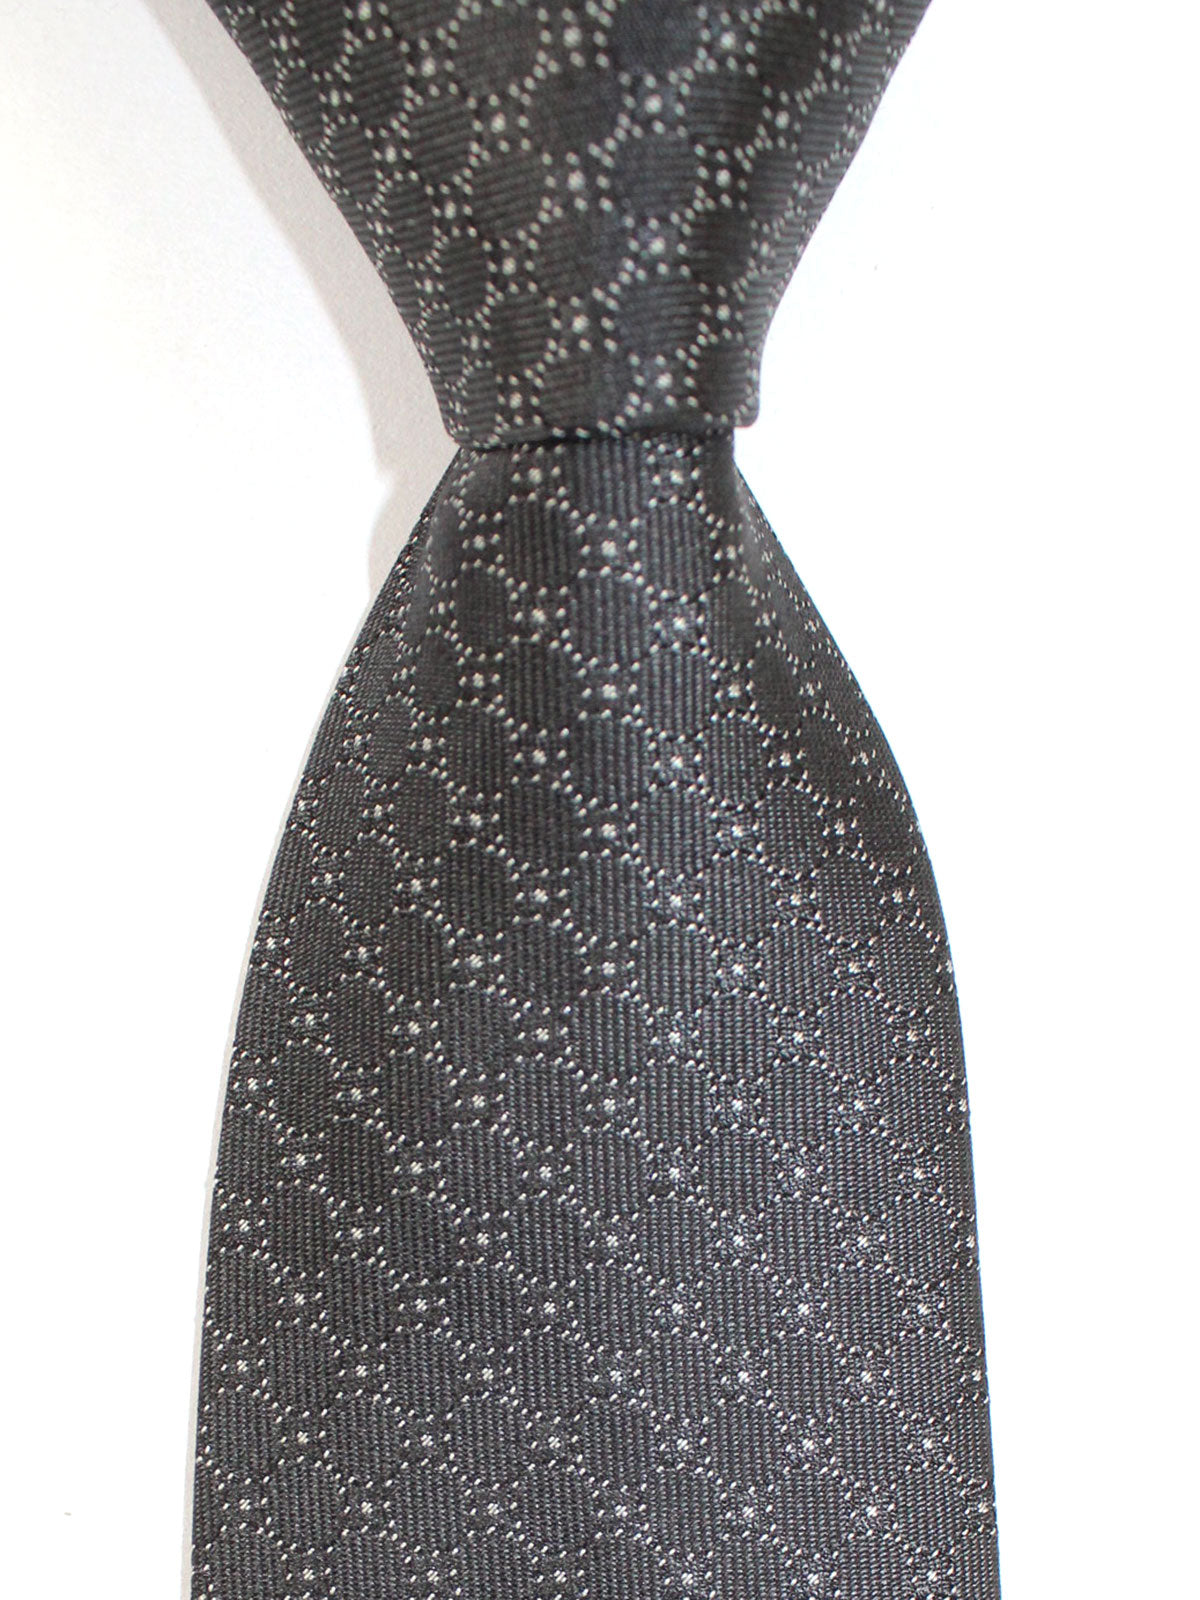 Versace Ties | Discount Designer Neckties SALE - Tie Deals